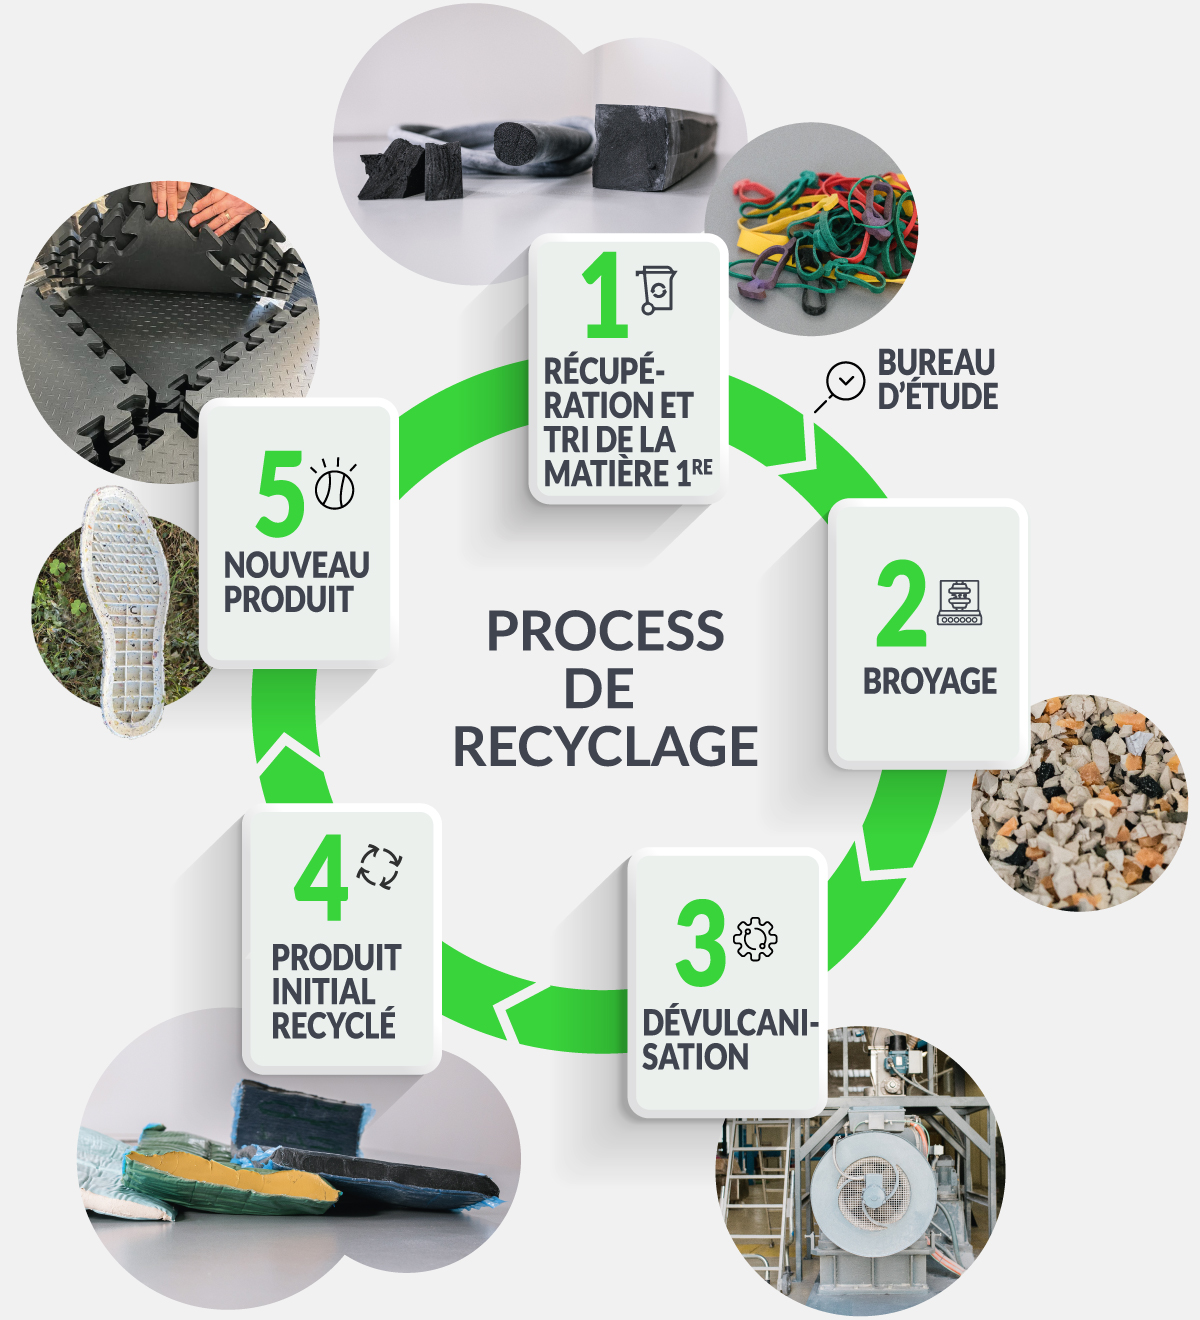 Schéma process recyclage en 5 points - récupération - broyage - dévulcanisation - produit initial recyclé - produit final